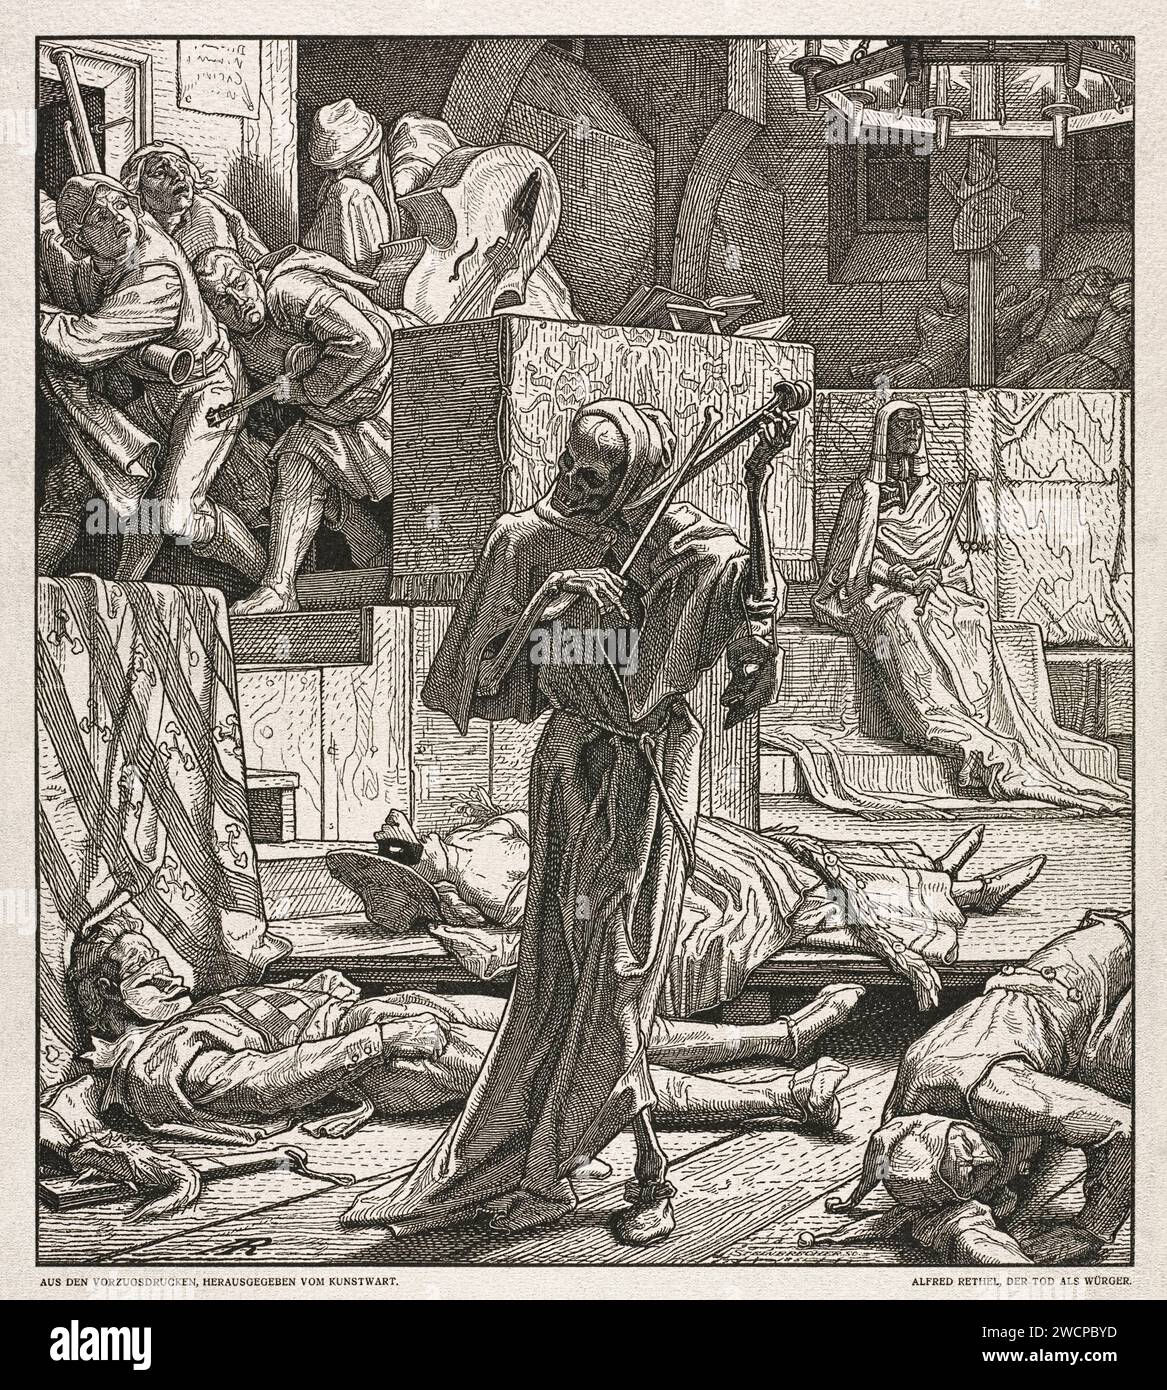 „Der Tod als Erwürger“ 1850 Holzschnitt von Alfred Rethel (1816-1859), der den Tod zeigt, der 1831 in Paris einen maskierten Ball besuchte, bei dem erstmals ein Ausbruch von Cholera auftrat. Stockfoto